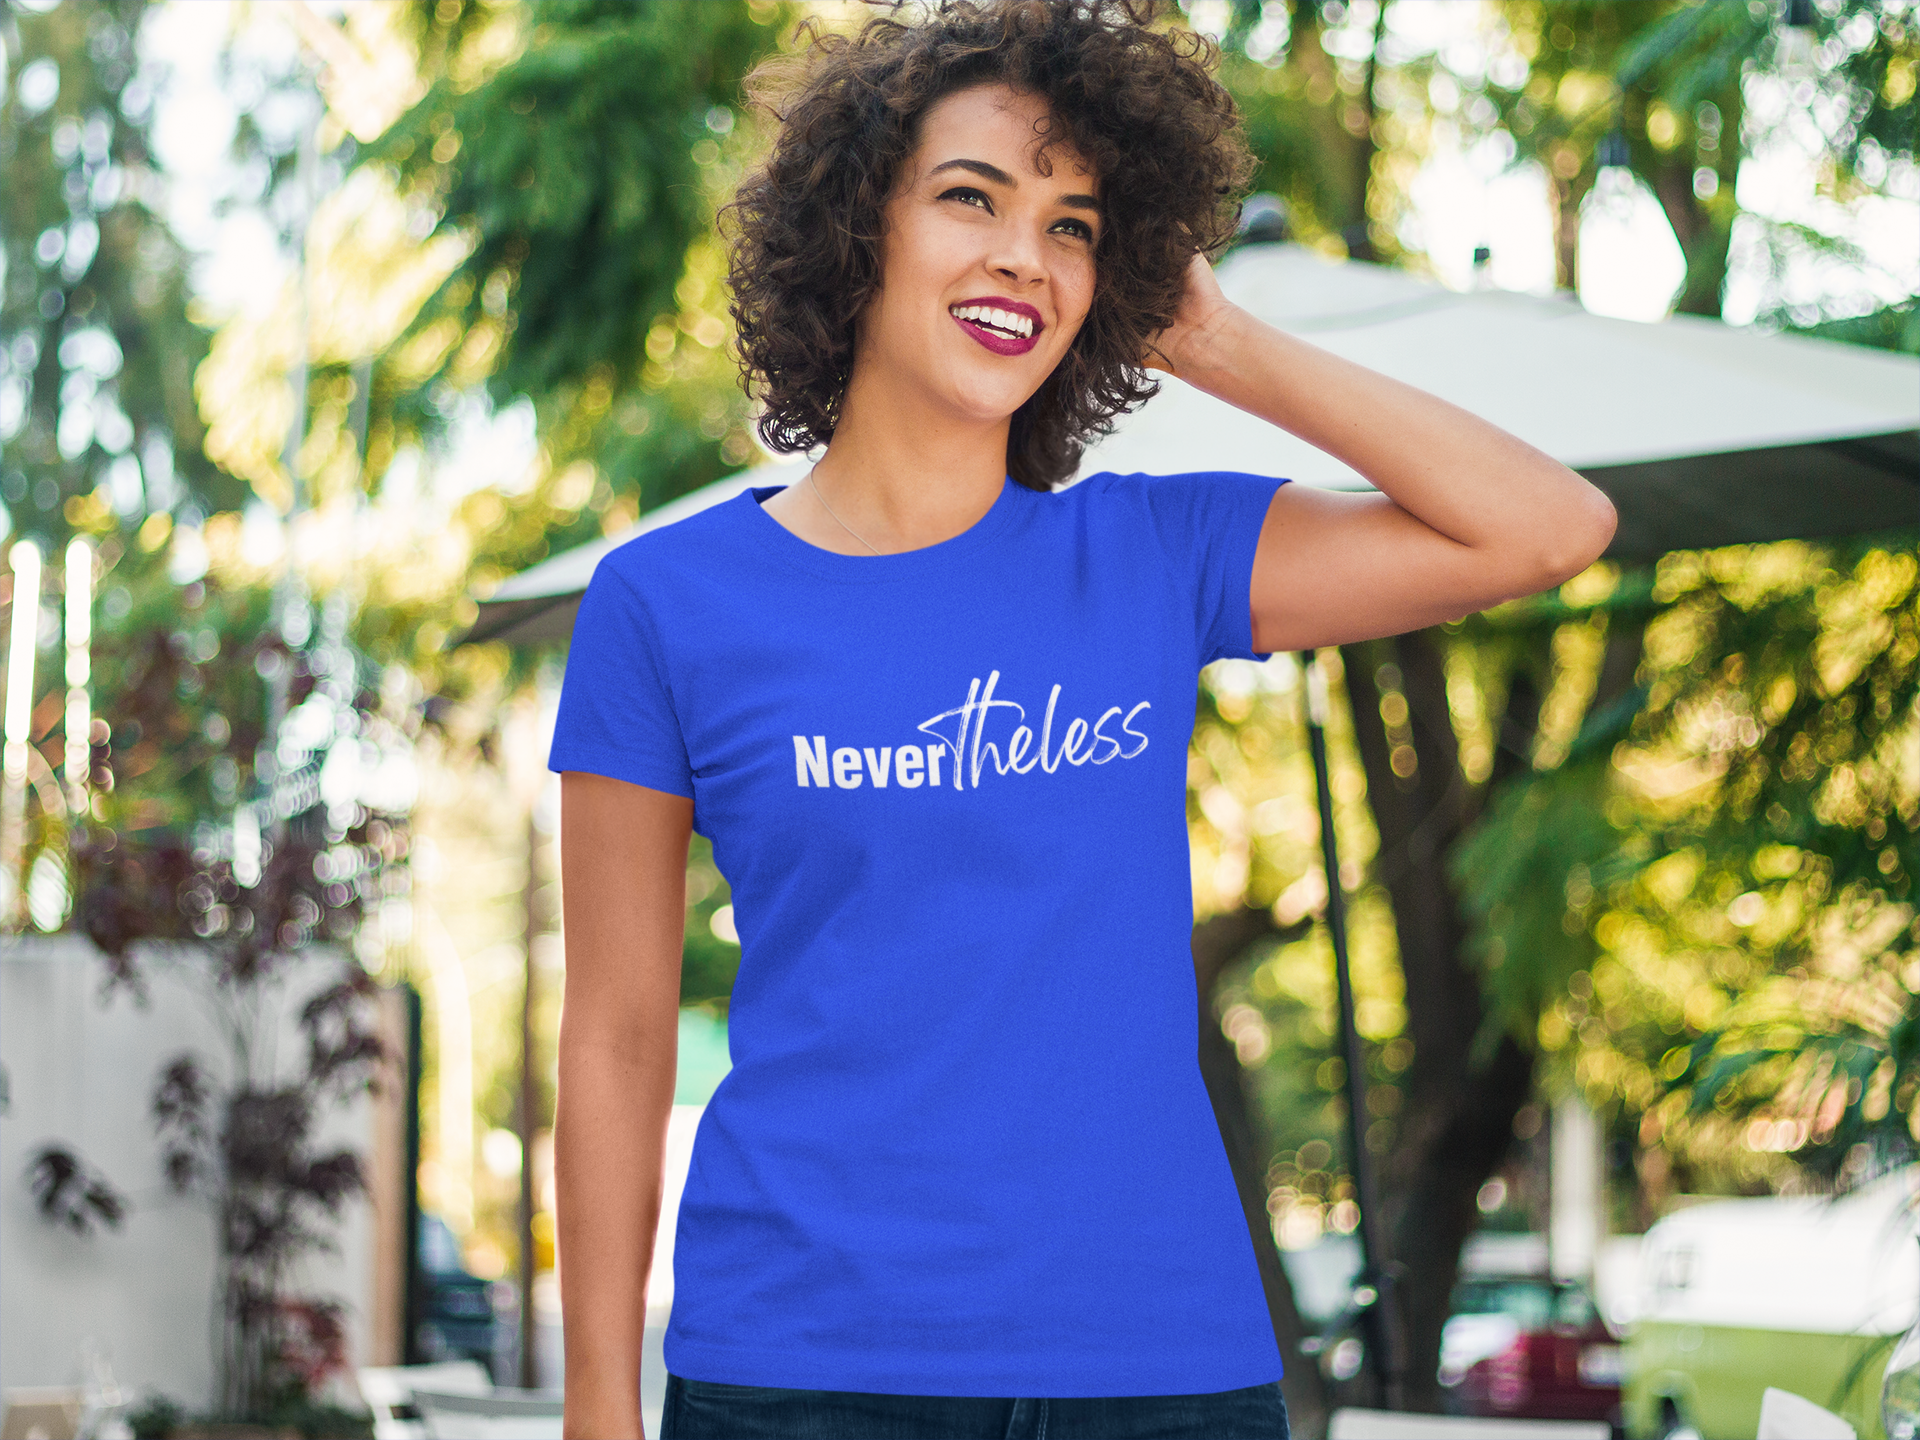 Nevertheless T-shirt - Women Empowerment T-Shirts & Apparel | CP Designs Unlimited